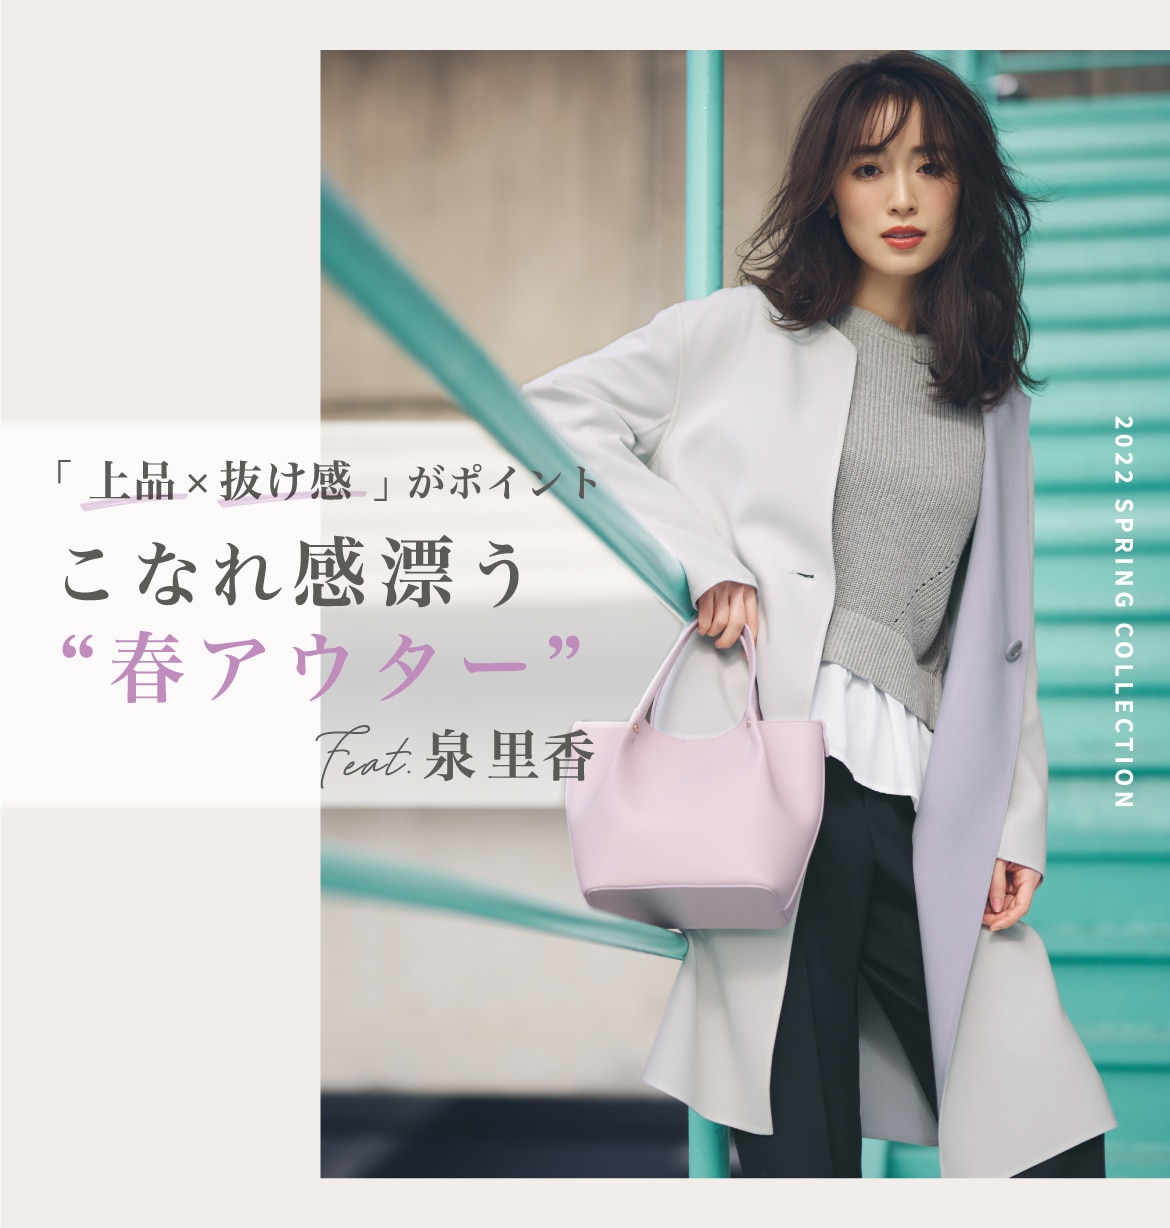 こなれ感漂う“春アウター” feat. 泉 里香 | ファッション通販サイト